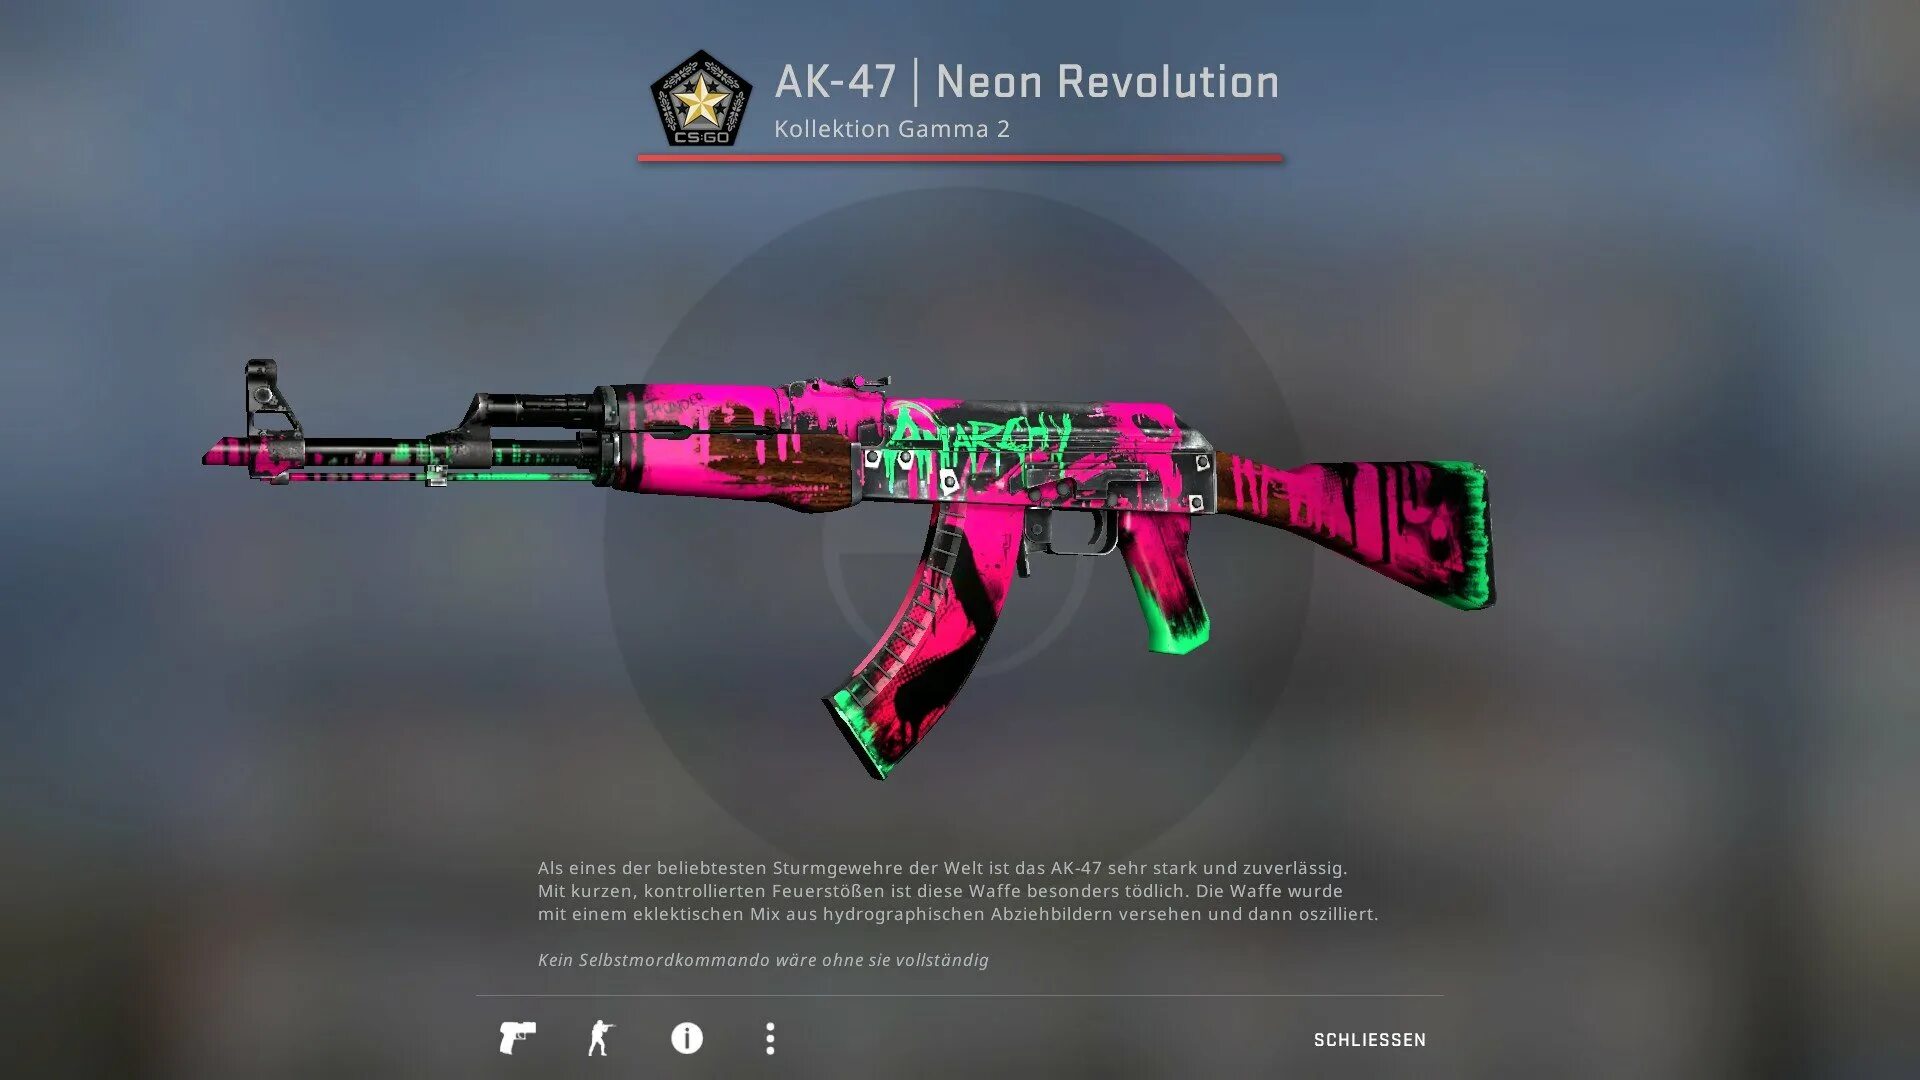 Неоновая революция кс. Скины на АК 47 В КС го. AK-47 | Neon Revolution. КС го скин неоновая революция. Неоновая революция КС го.